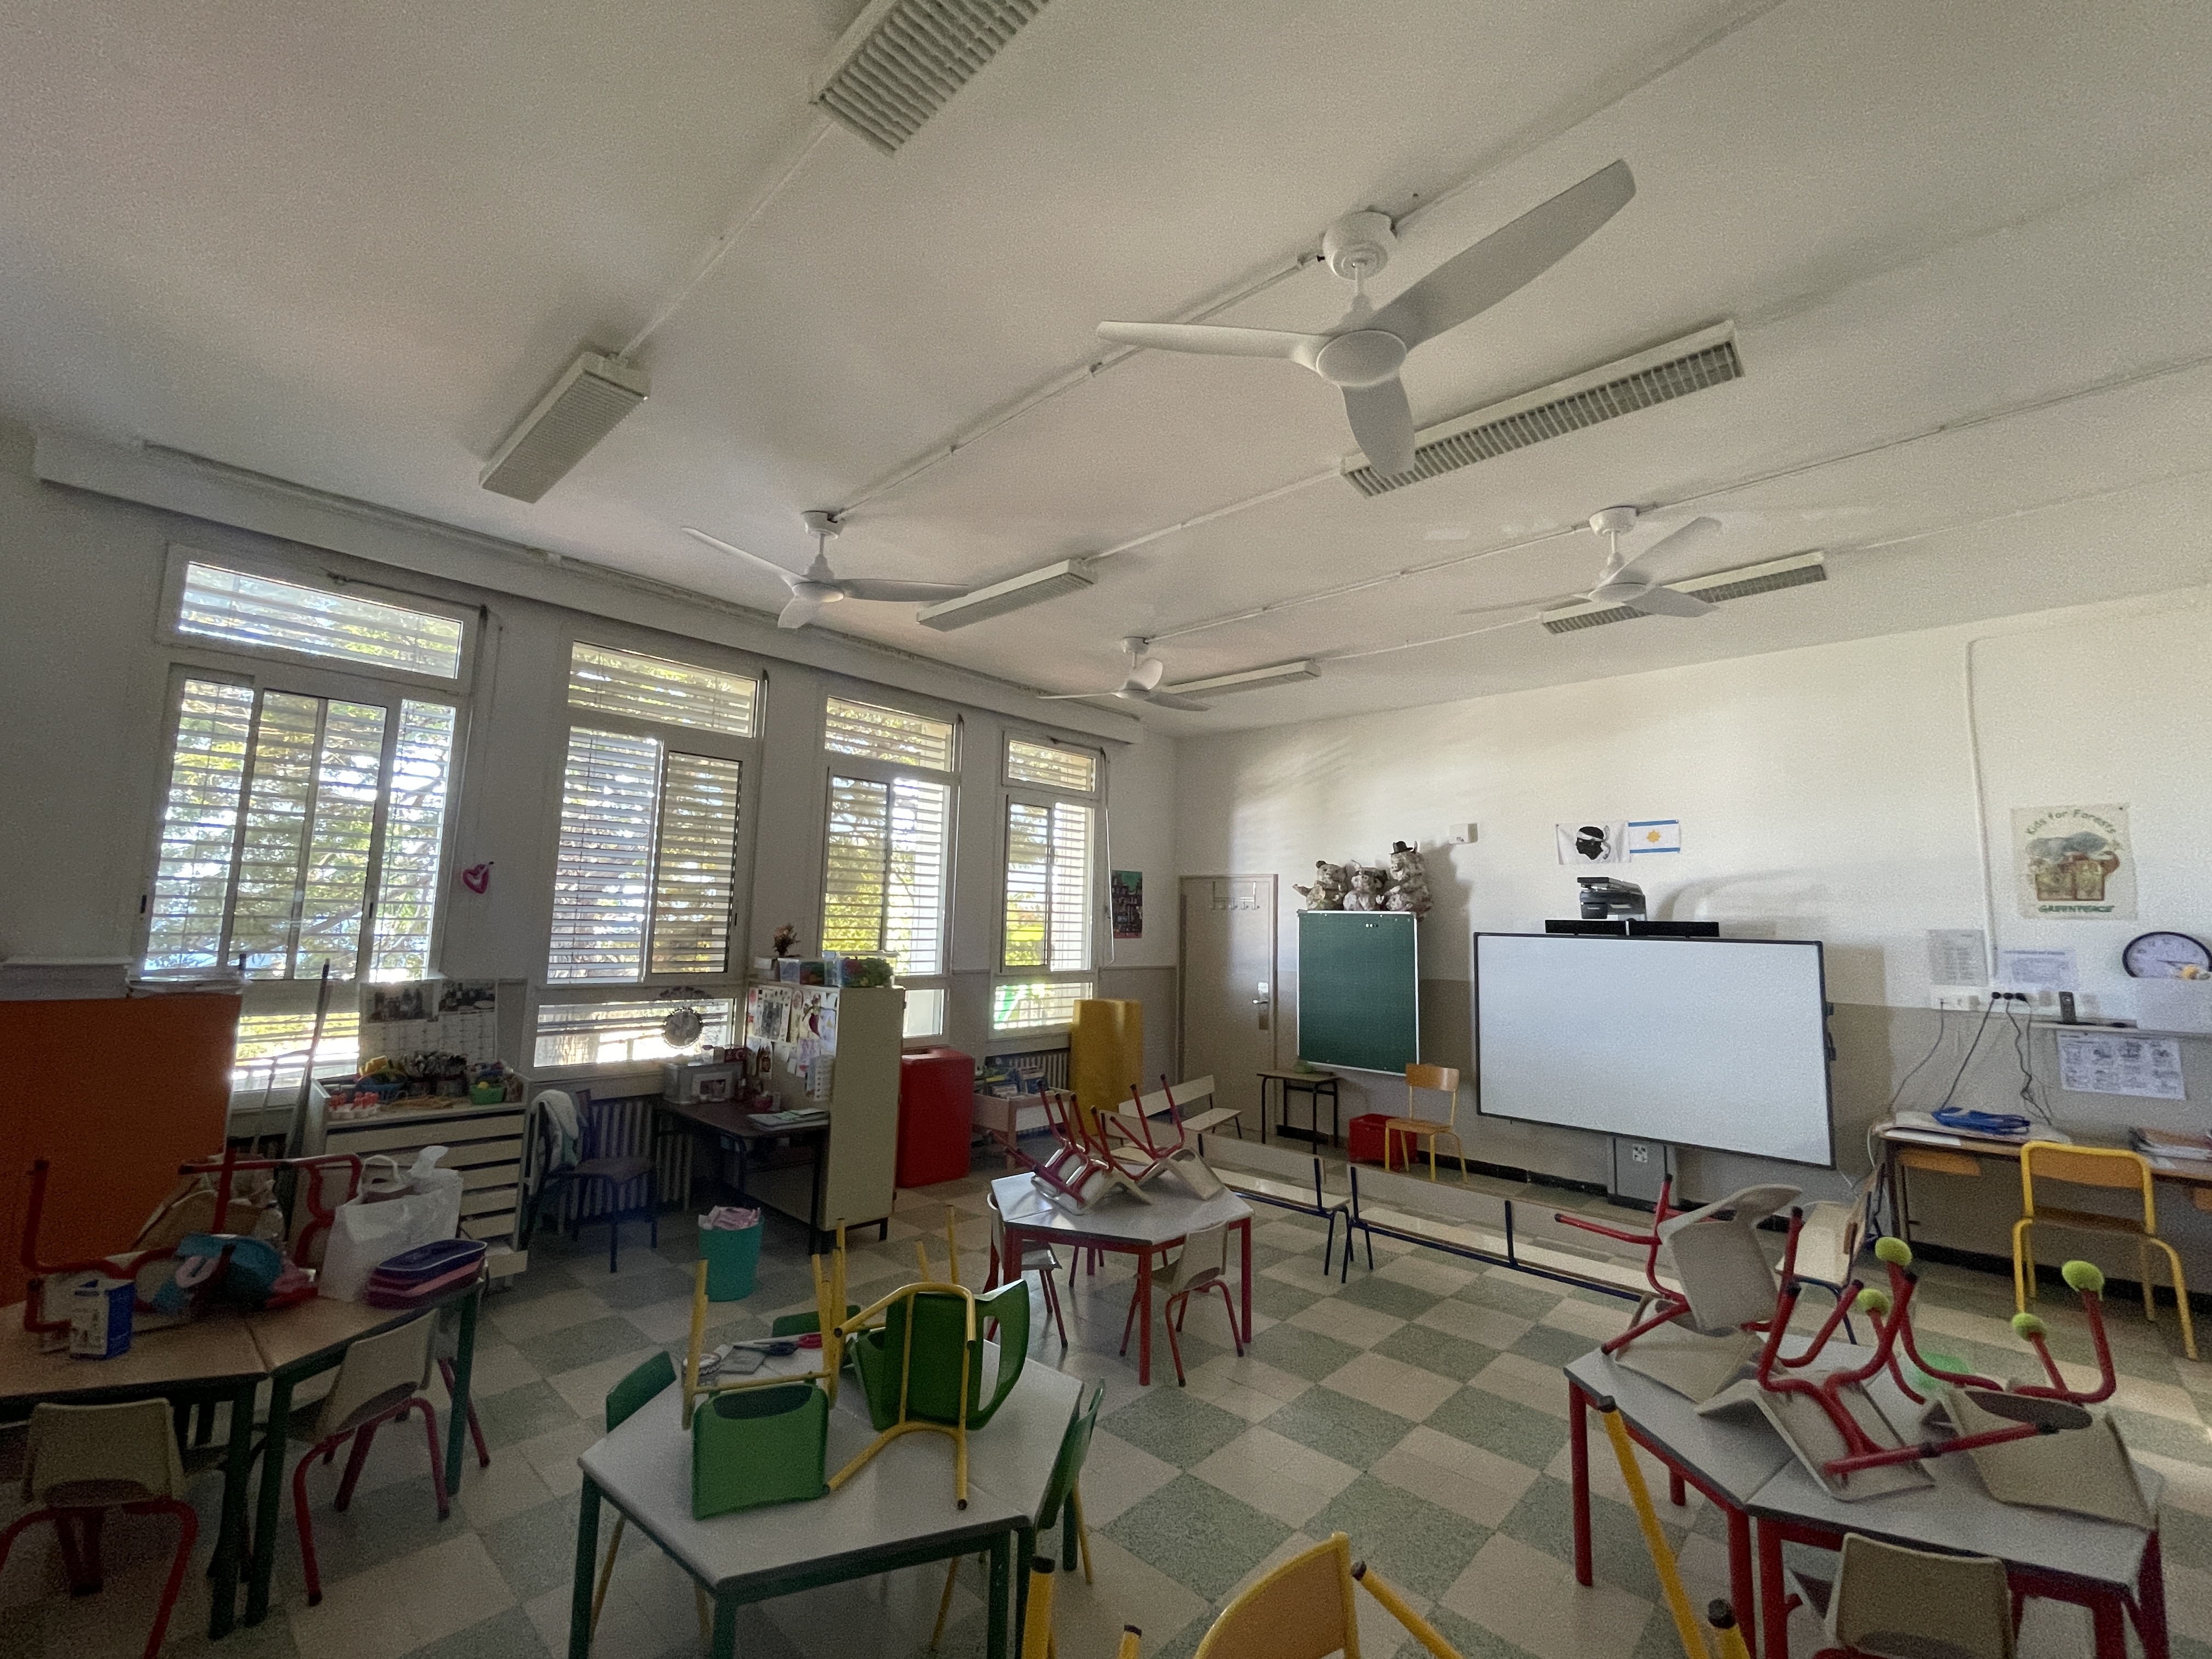 Une des salles de classe de l'école George Charpak équipée de ventilateurs au plafond et de brise-soleil devant les vitres.